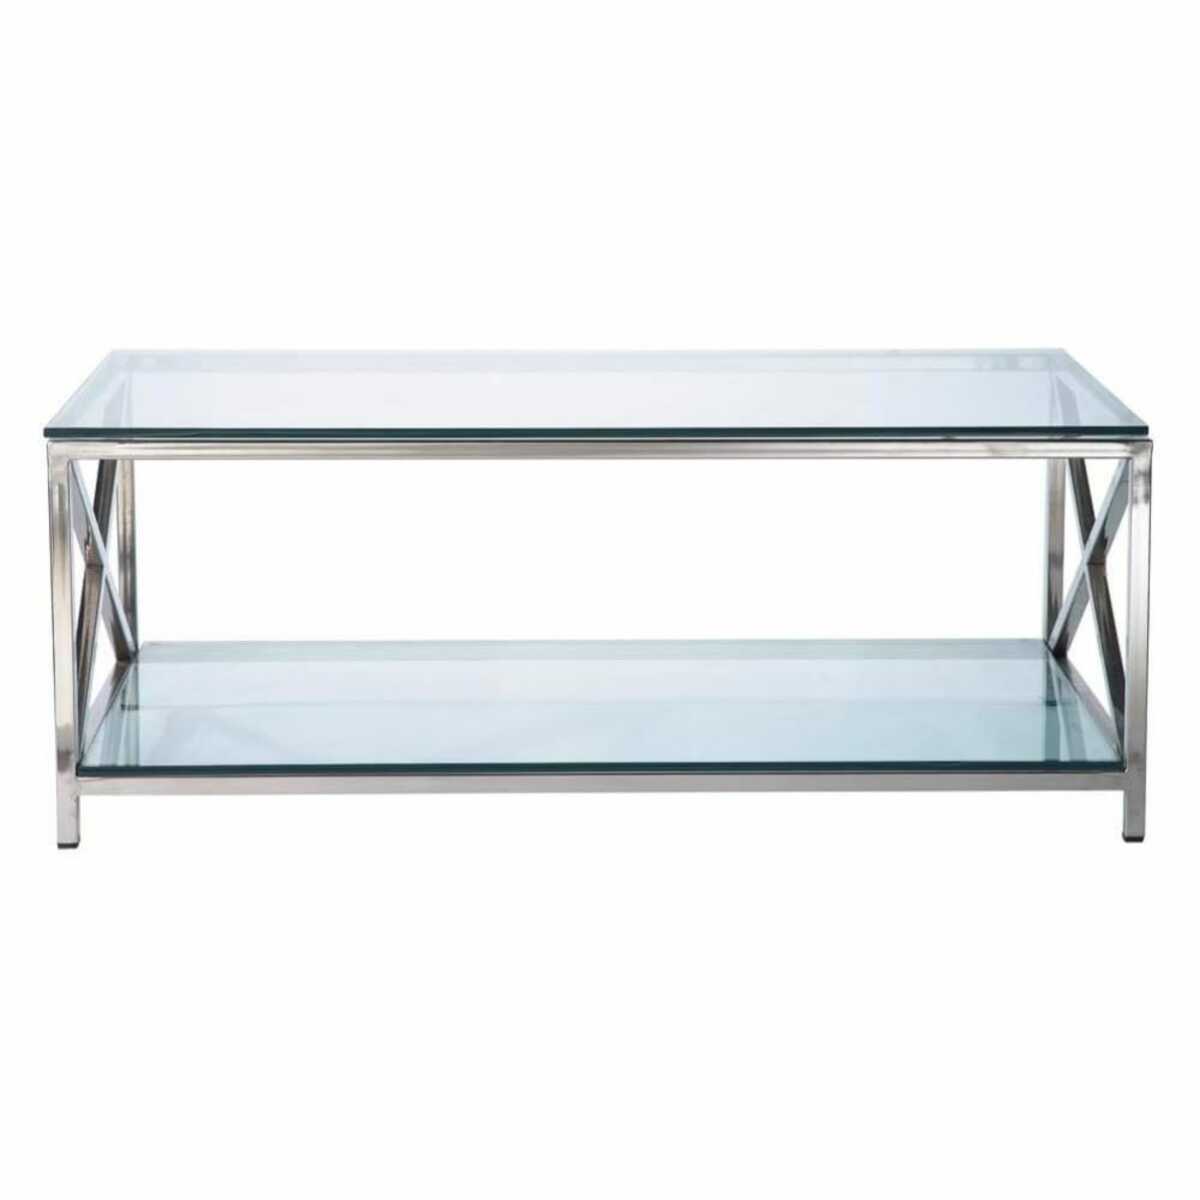 Table basse en verre et métal L110